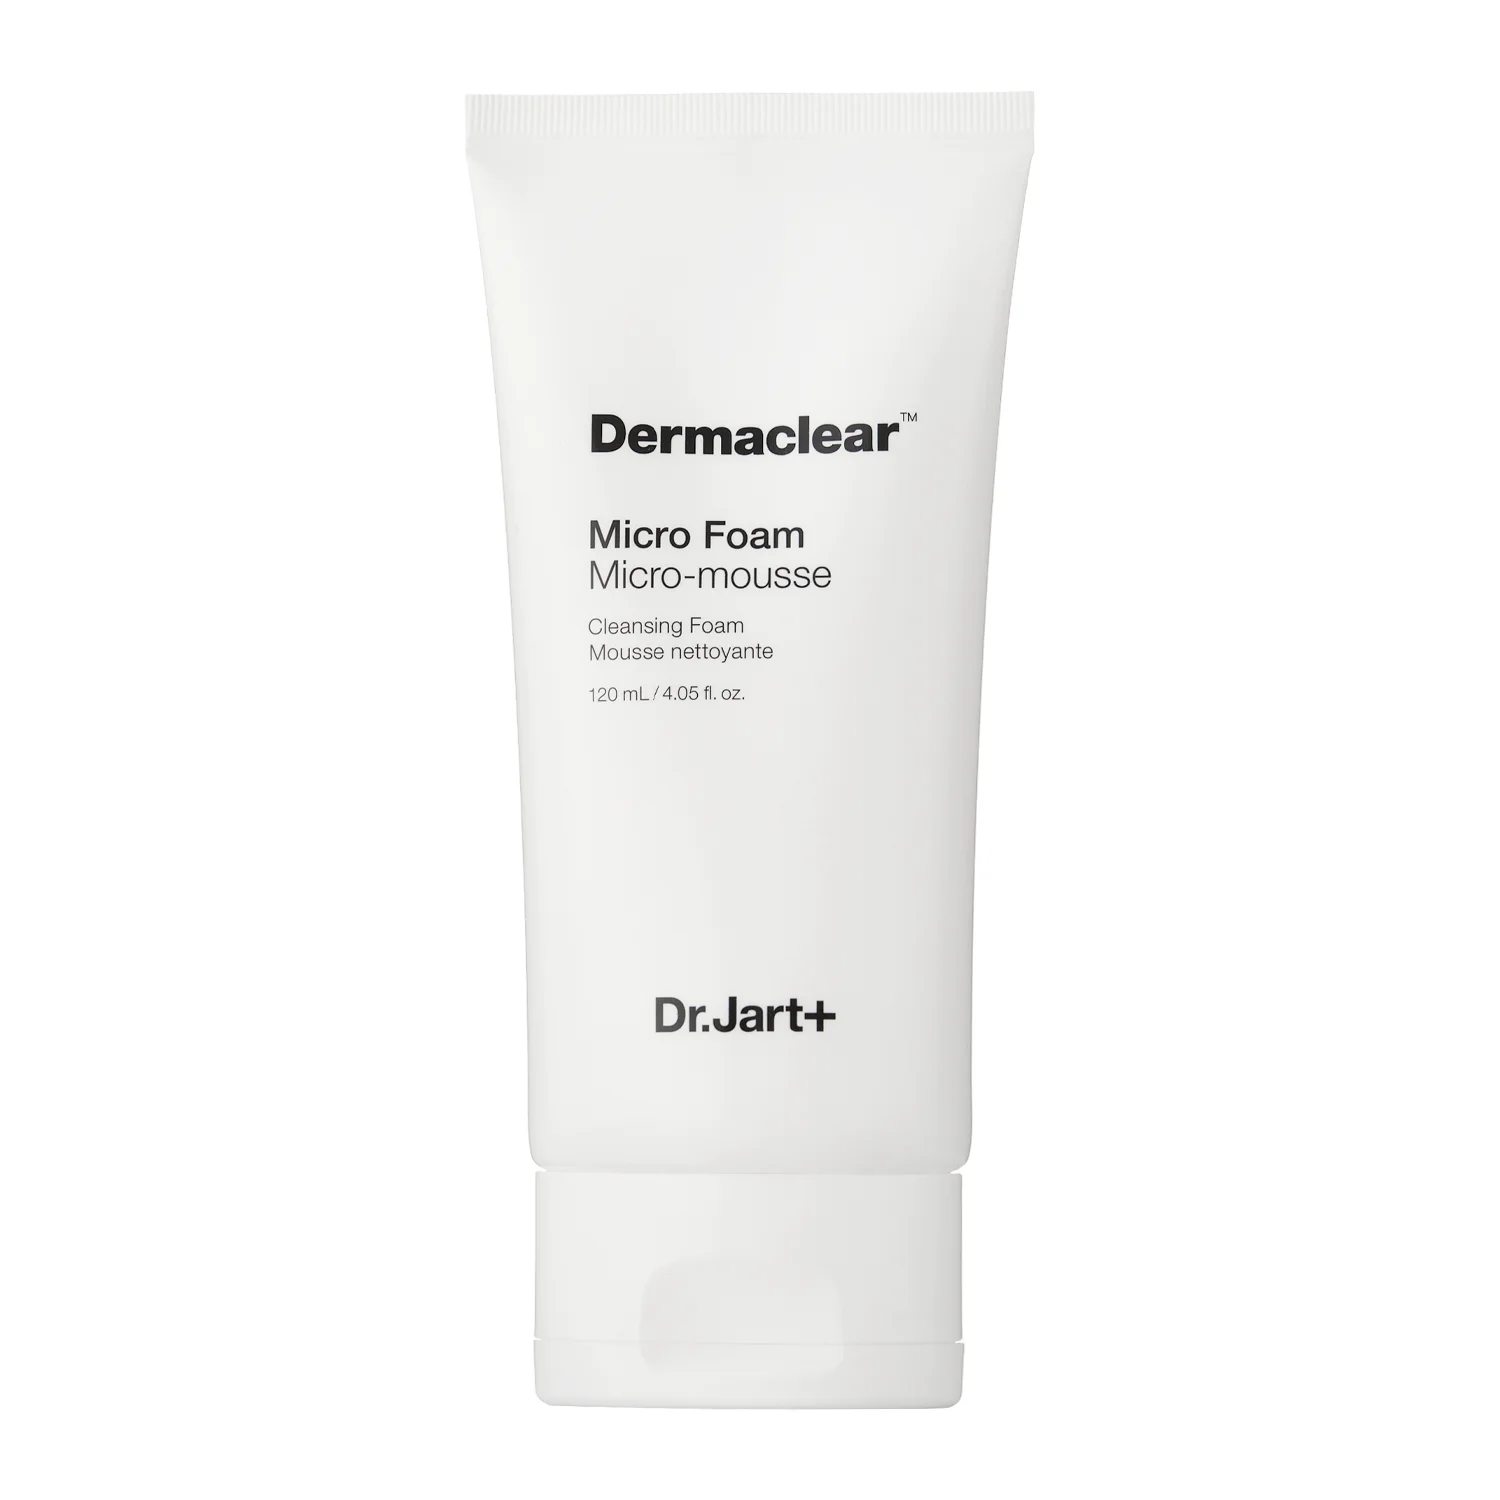 Dr. Jart+ - Dermaclear Micro Foam Cleanser - 120ml